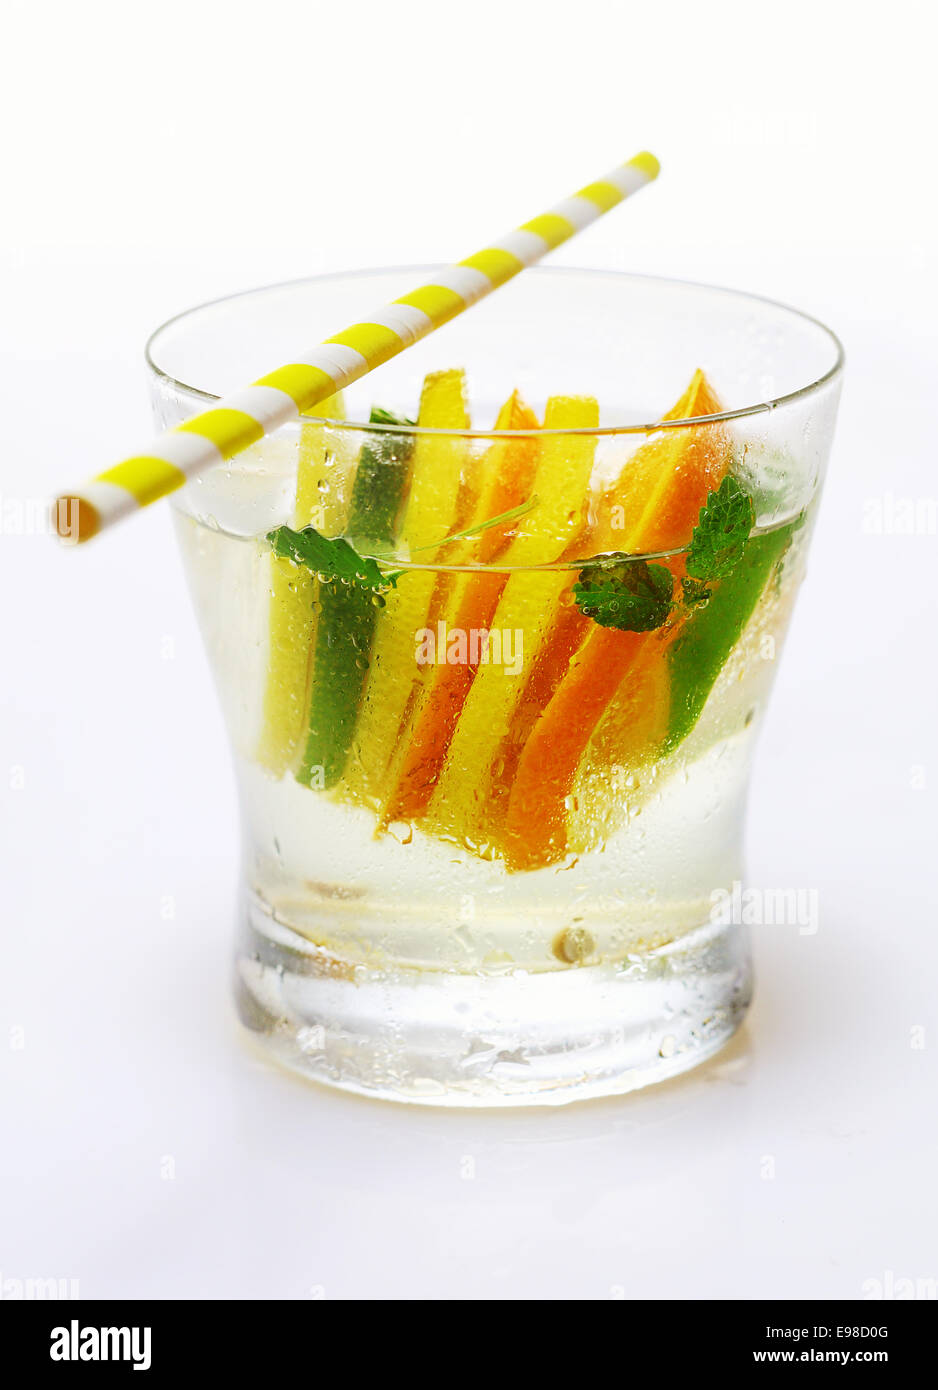 Tropical cocktail di agrumi con vodka guarnita con alternando le fette di limone ed arancia servito con una cannuccia Foto Stock